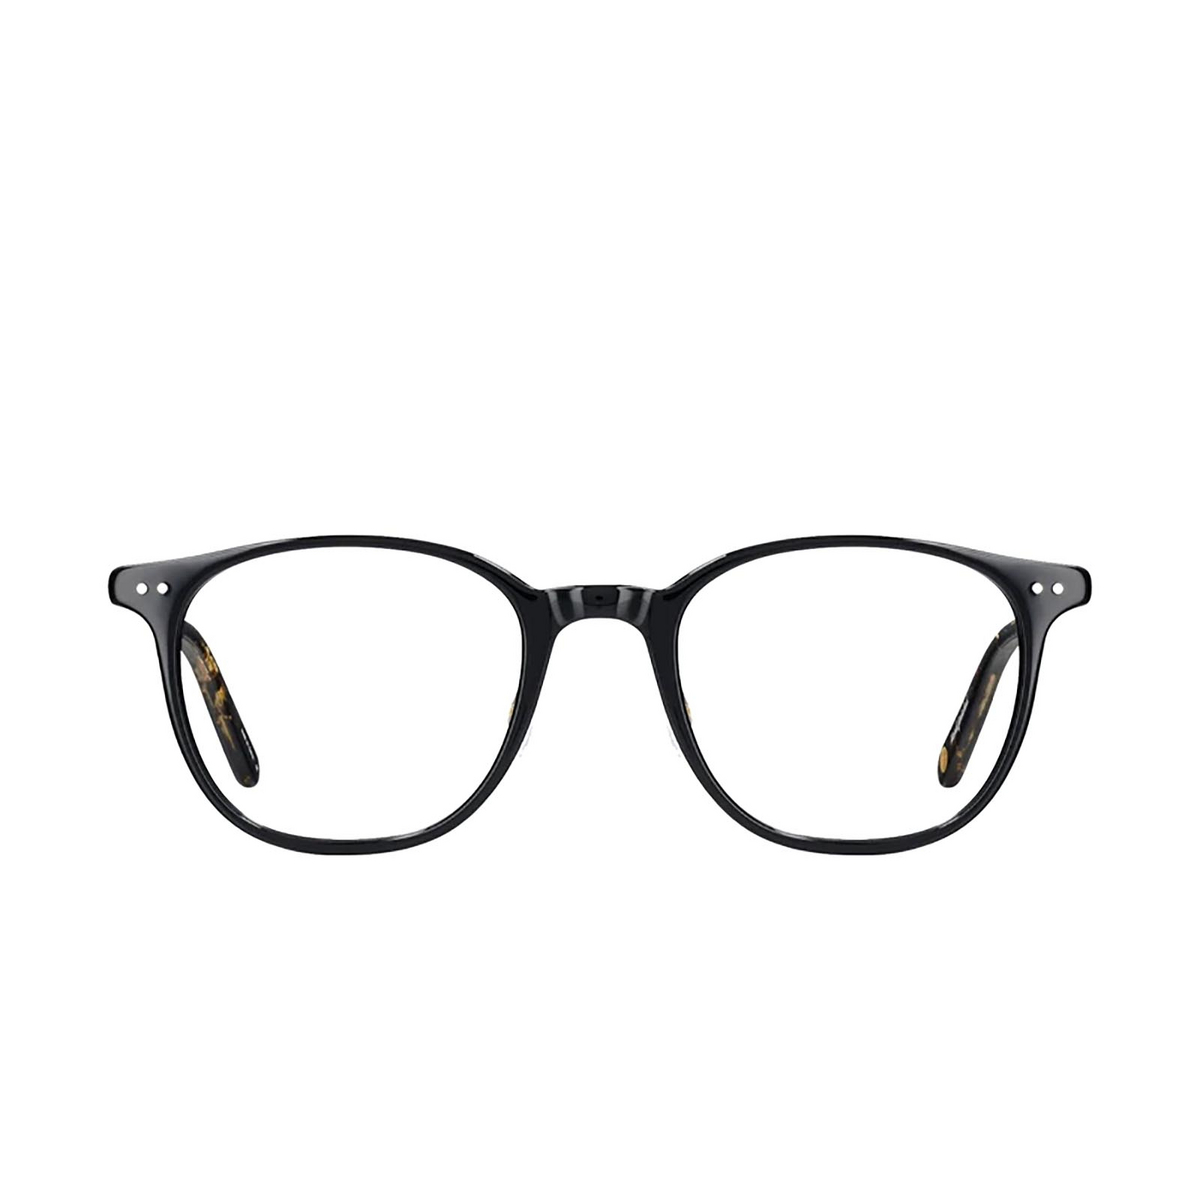 Garrett Leight BEACH Eyeglasses BK-BKA-G Black/Amber-Gold - front view